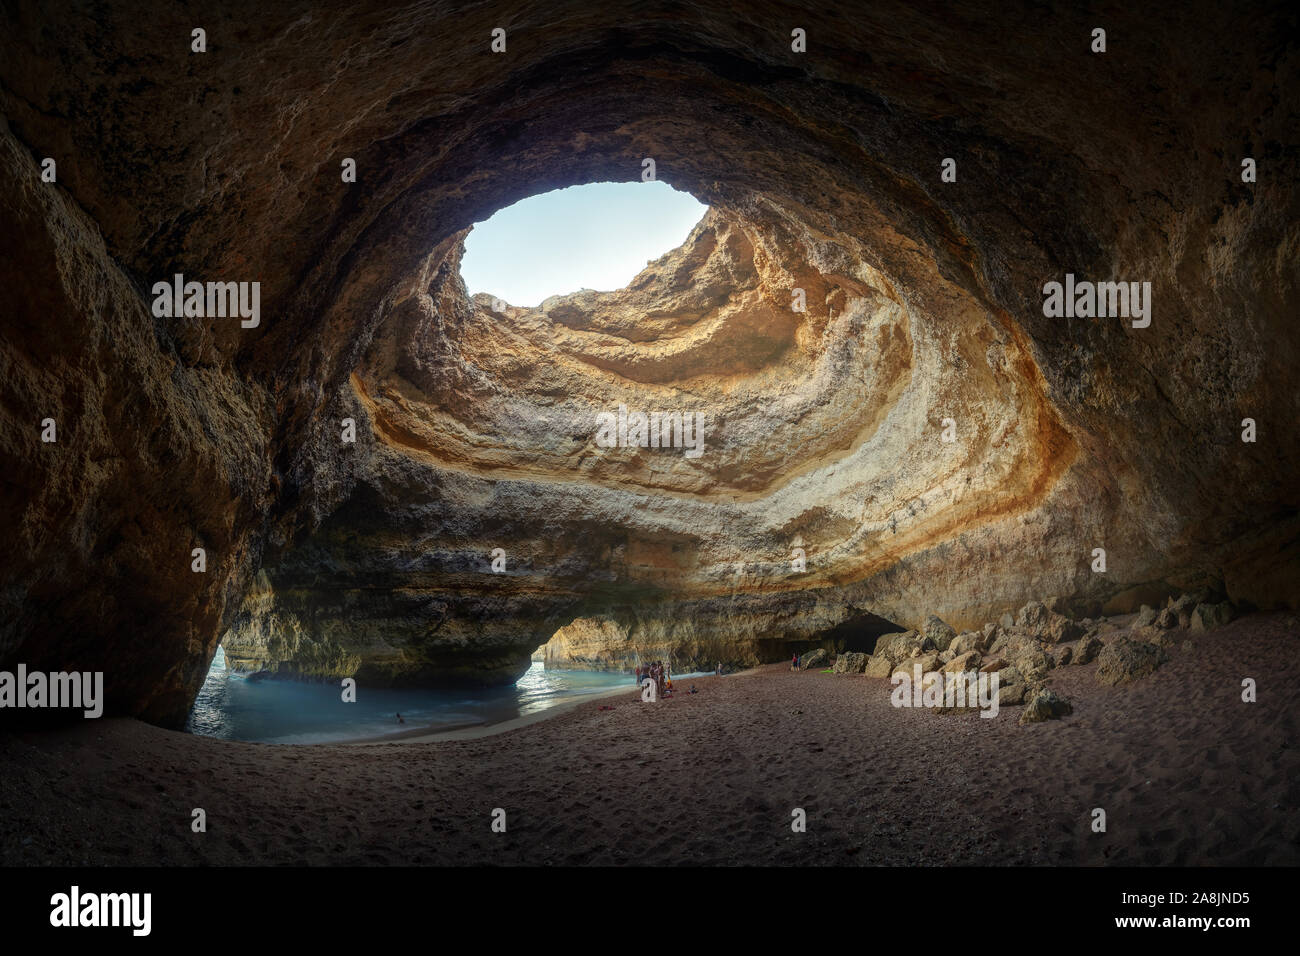 Strand in einer Felsenhöhle in der Algarve, Portugal. Loch in der Decke. Blaues Wasser und Yellow Stone. Felsen und Sand. Die Menschen in der Höhle. Stockfoto